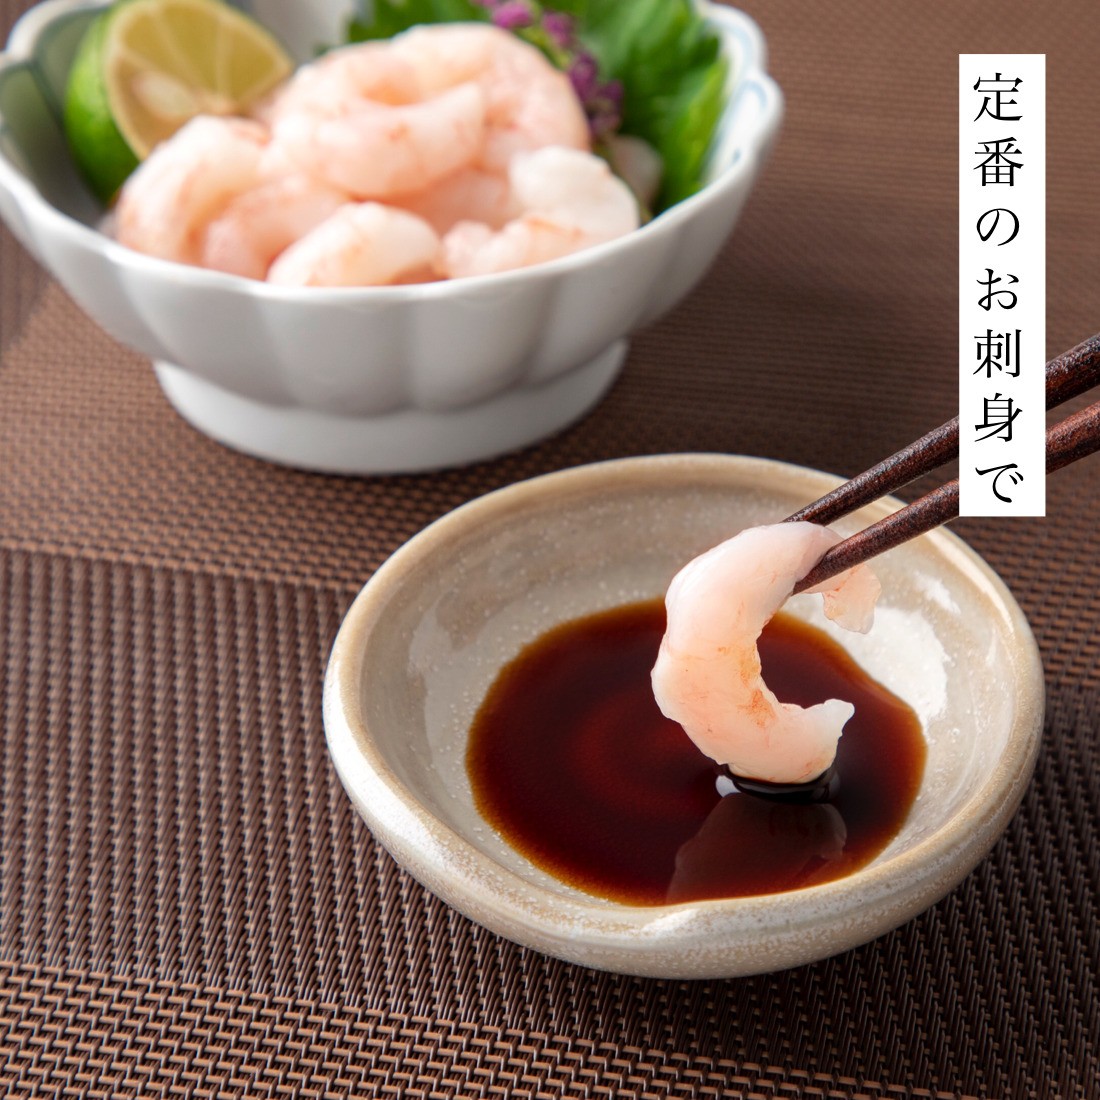 o sashimi ....... нет 200g×2 пакет sashimi ....... северная креветка .. креветка ...... море .. море . море ... морепродукты [C рассылка : рефрижератор ]